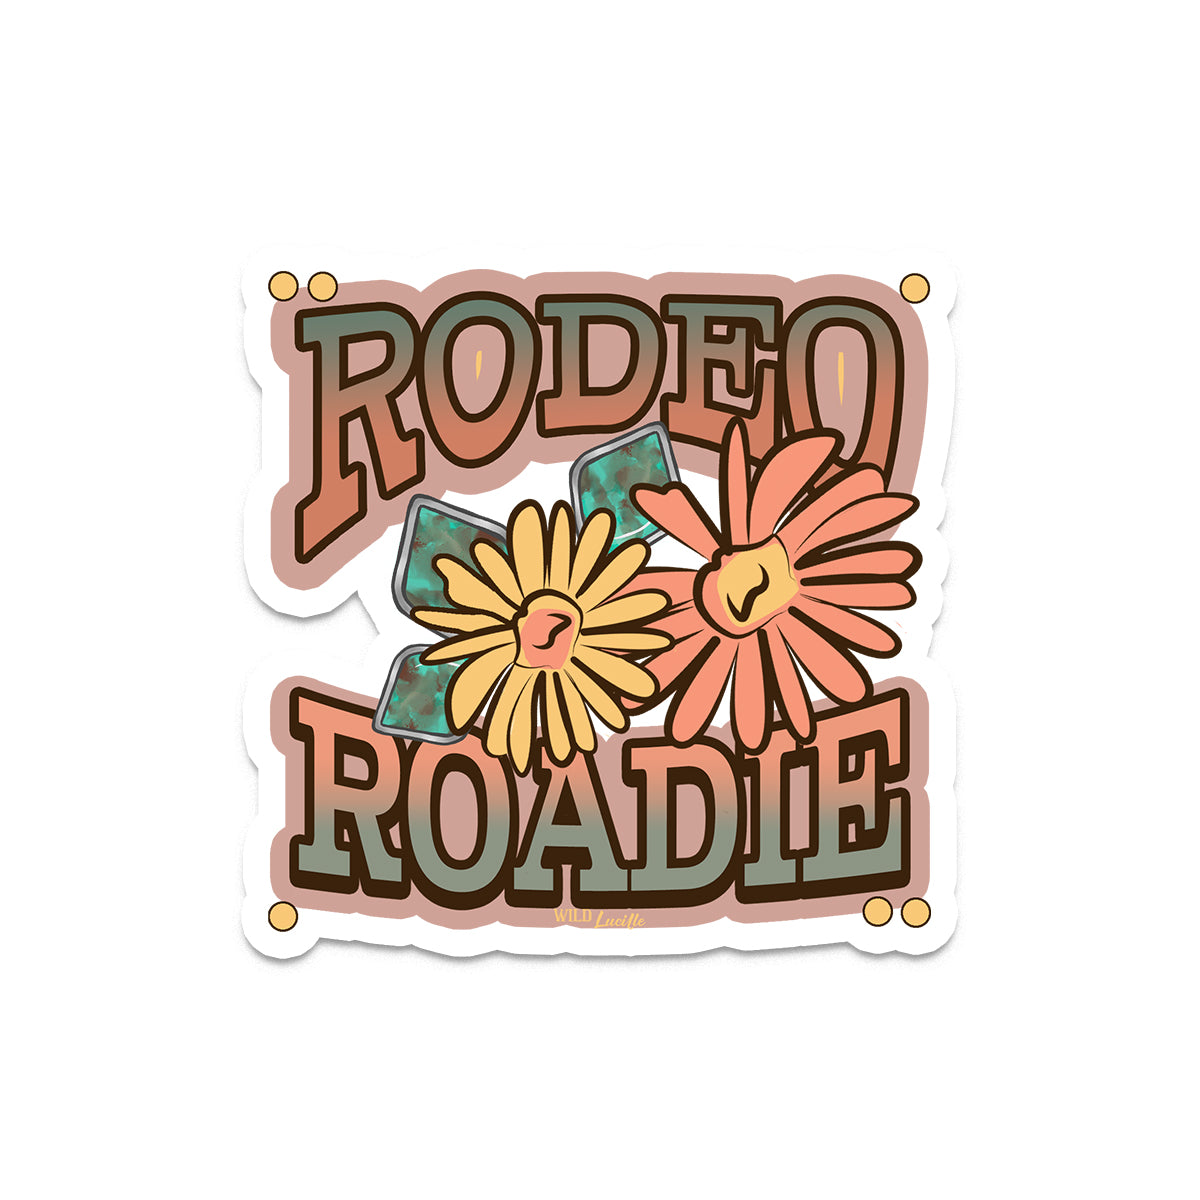 Rodeo Roadie - Western Vinyl Sticker Decals